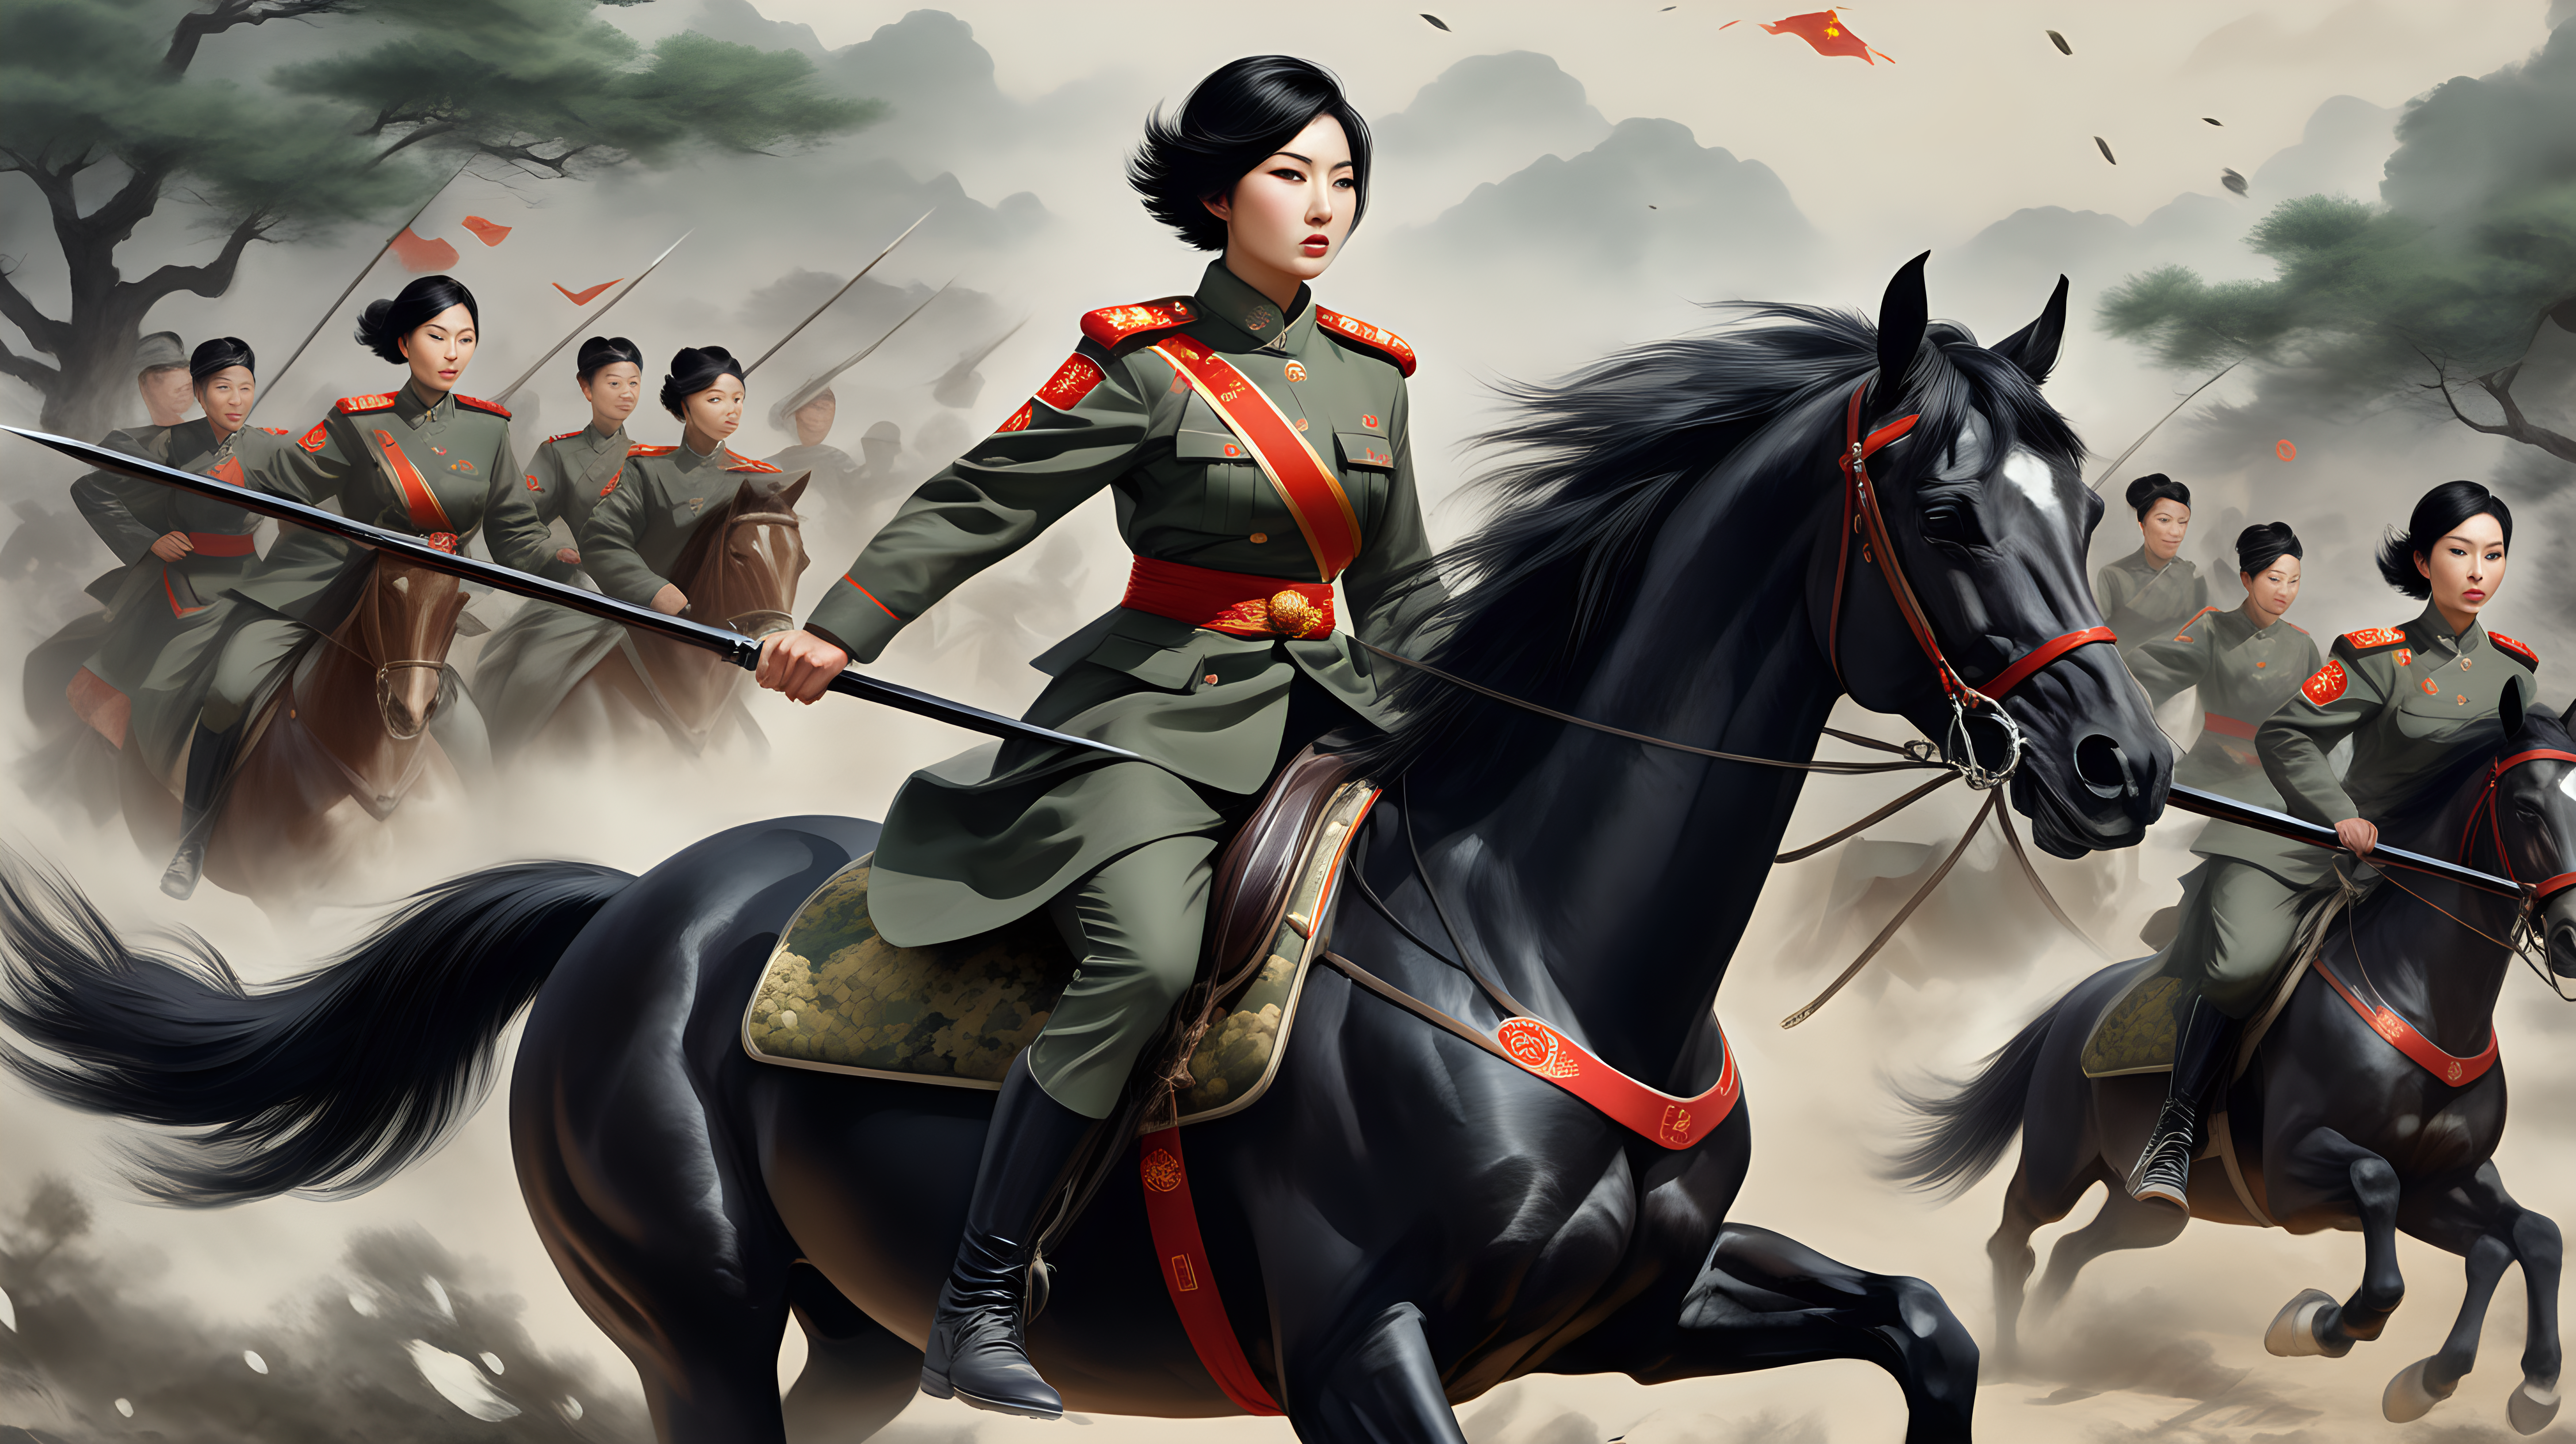 中国女兵
短发
黑发
迷彩紧身裤
骑马
拿着长矛
冲向敌人